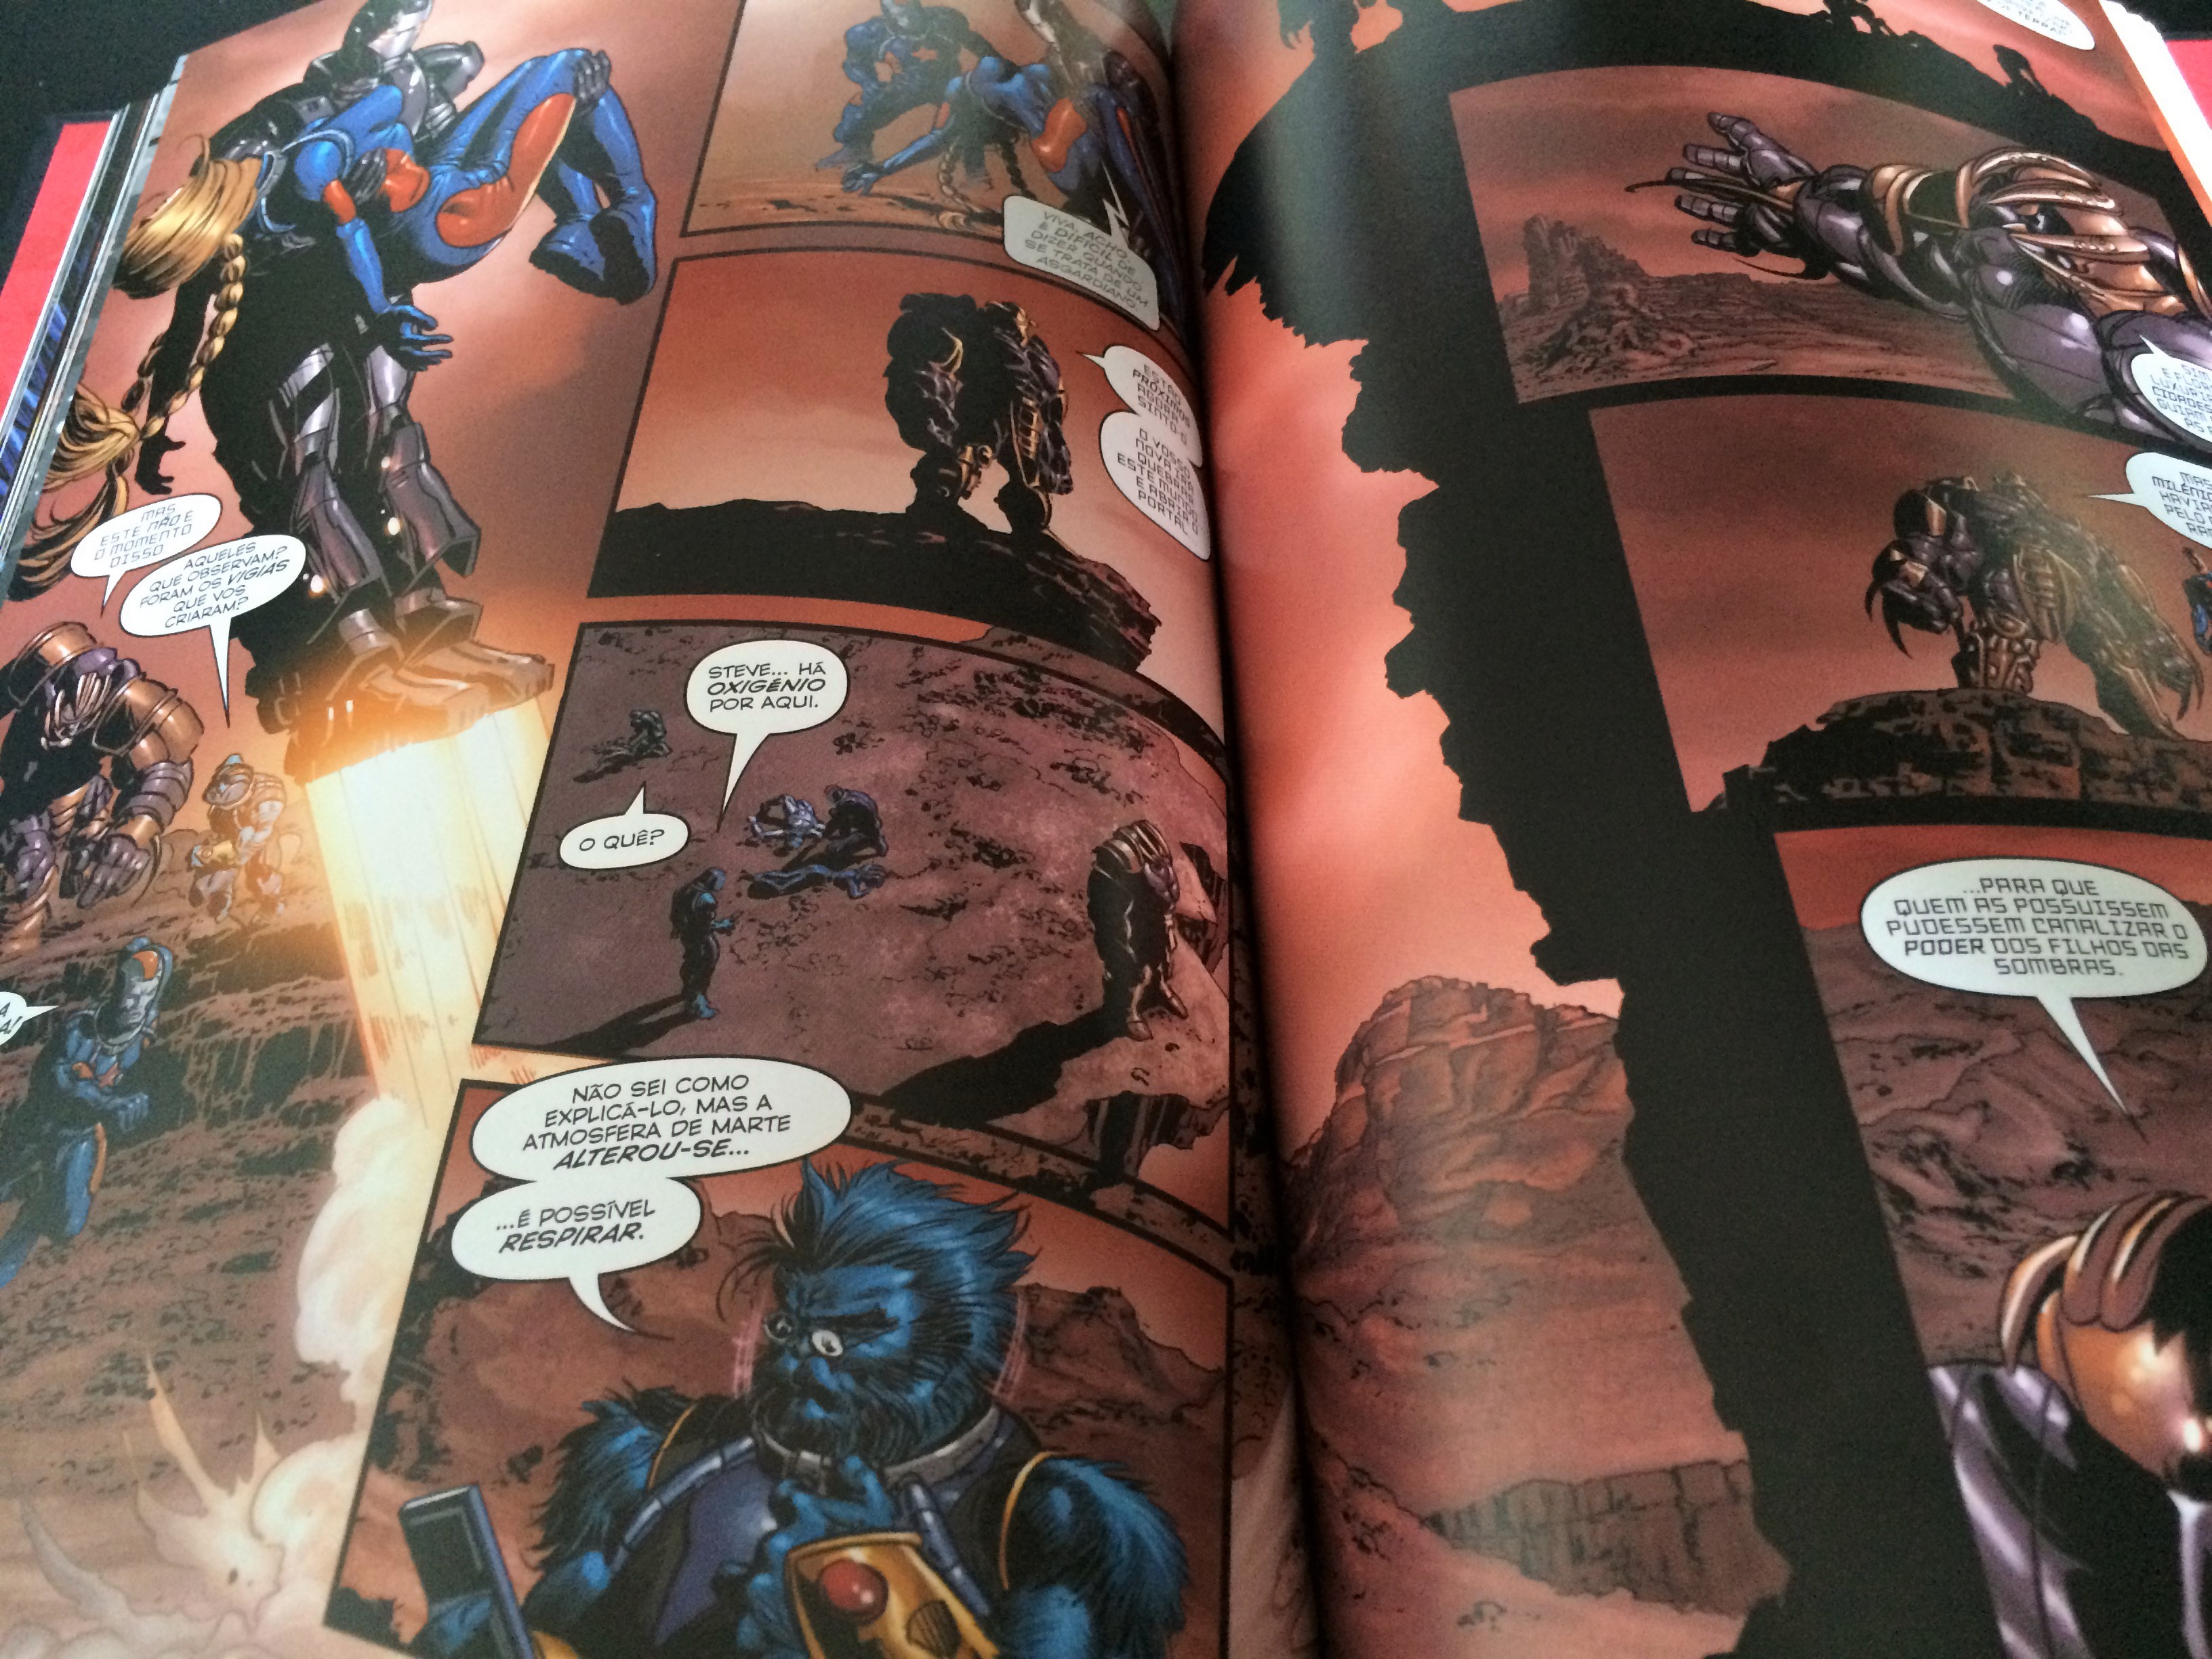 Vingadores secretos – Missão a Marte – Marvel Graphic Novels Vol. 35